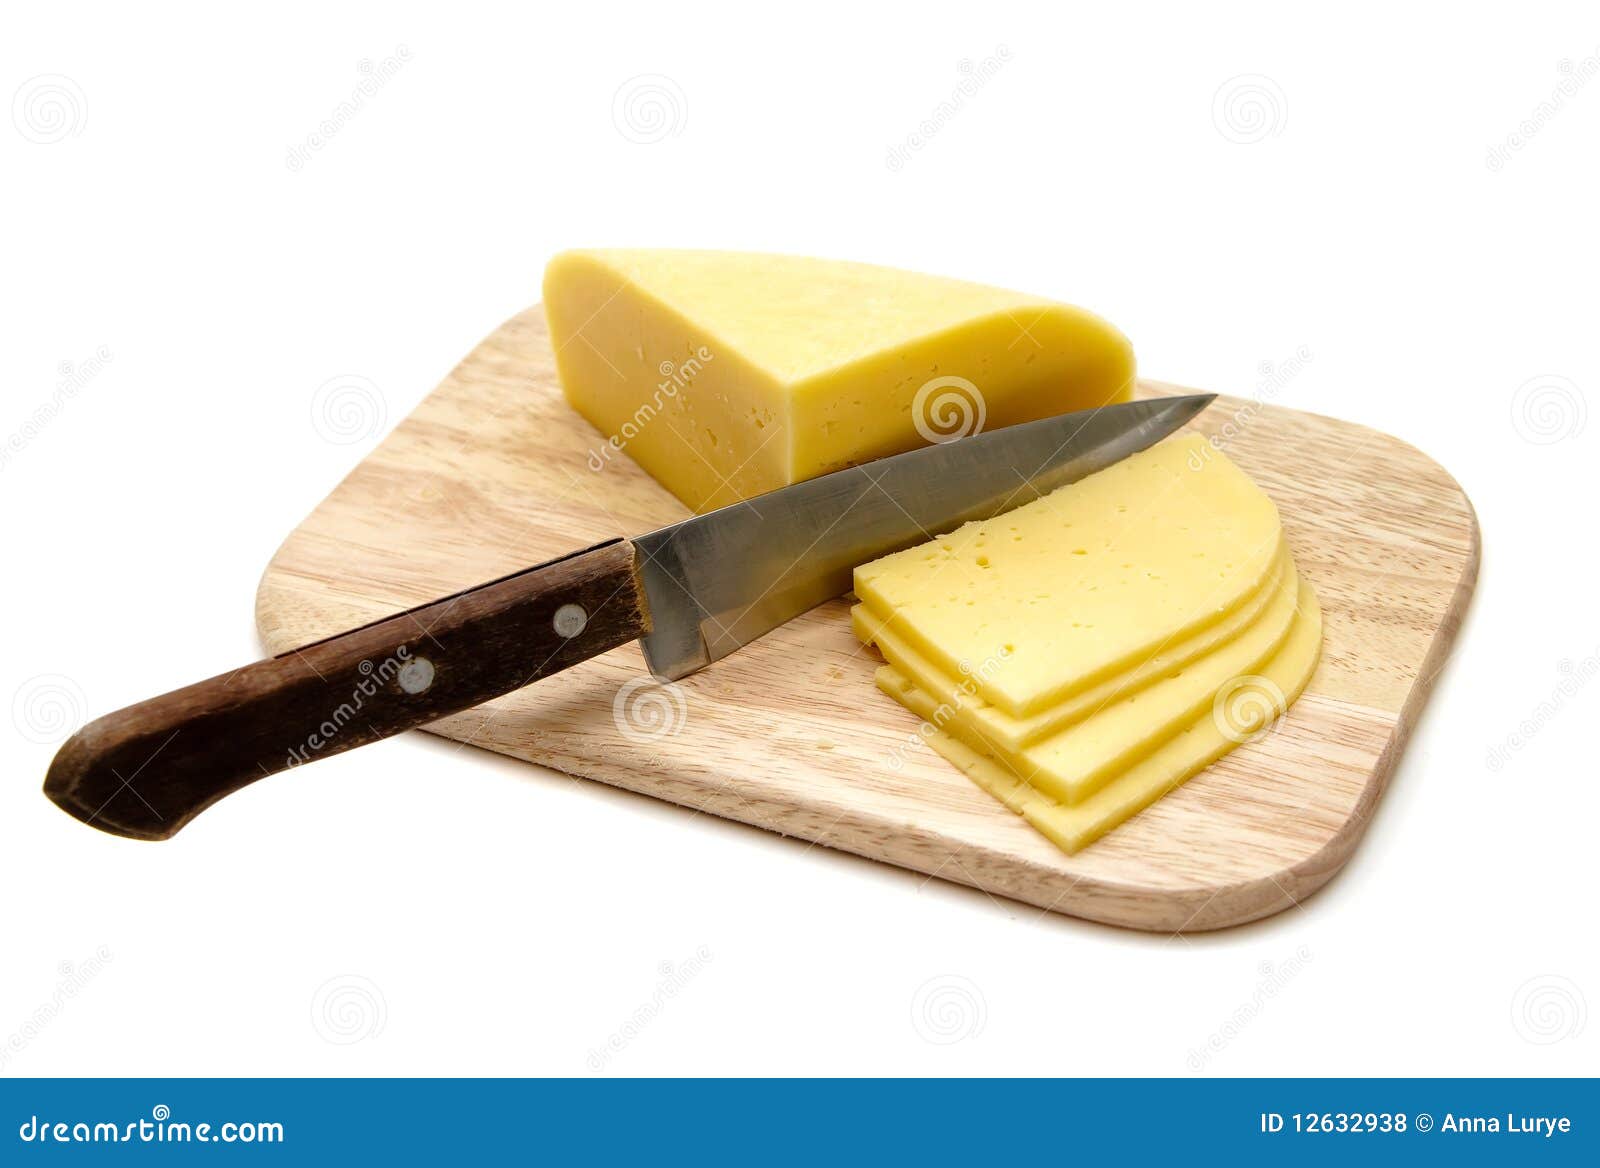 cutting-cheese-12632938.jpg